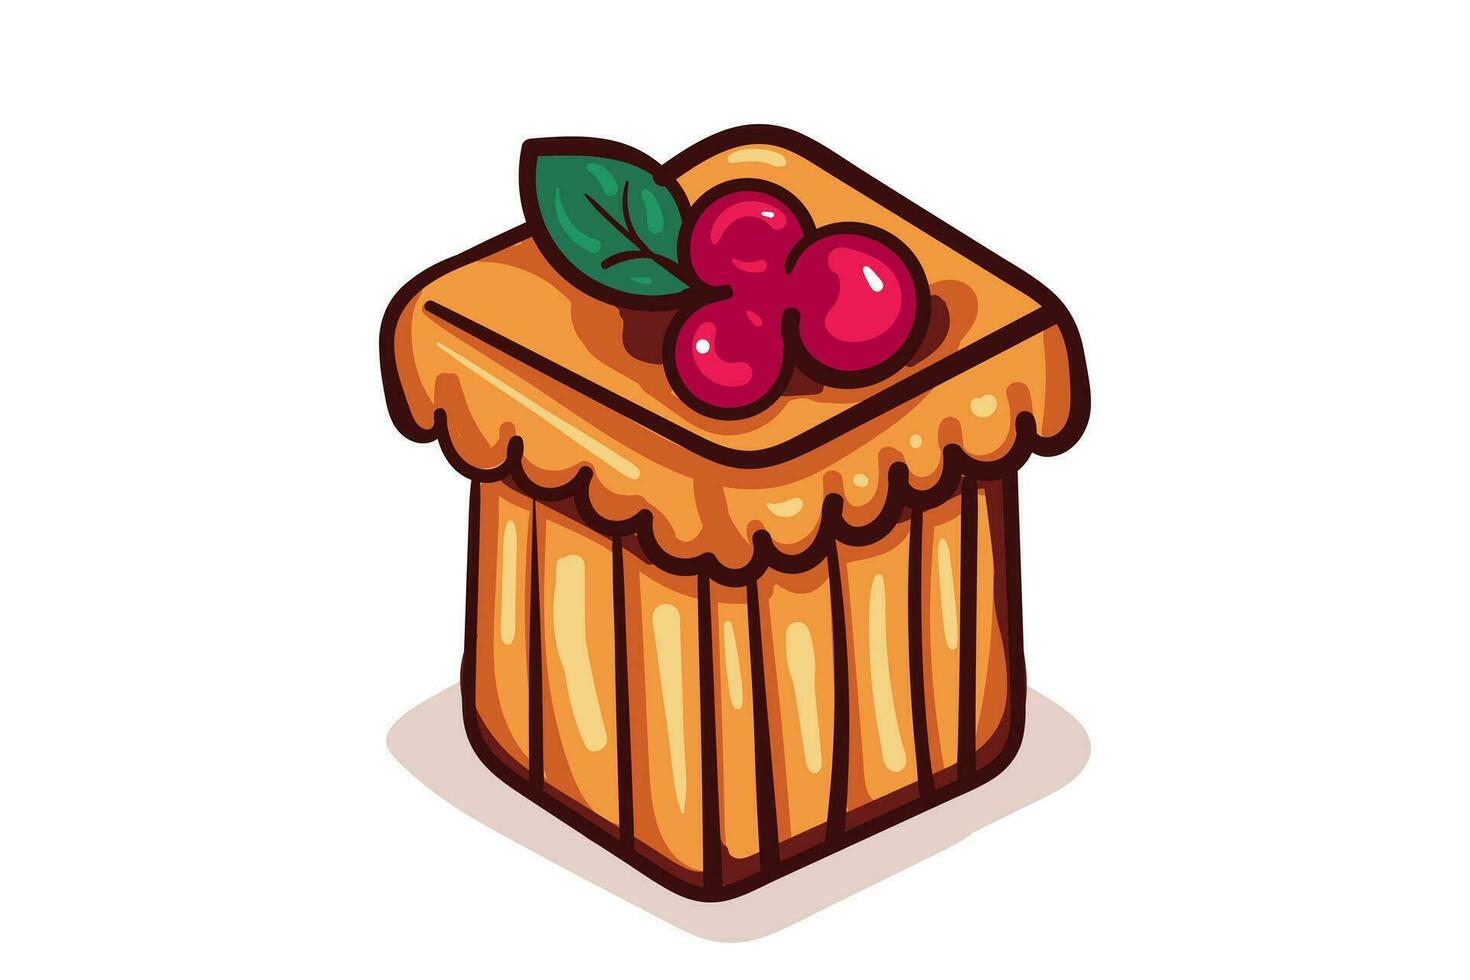 zoet taart vector illustratie. toetje voedsel symbool. bakkerij ontwerp elementen, logo's, insignes, etiketten en pictogrammen.